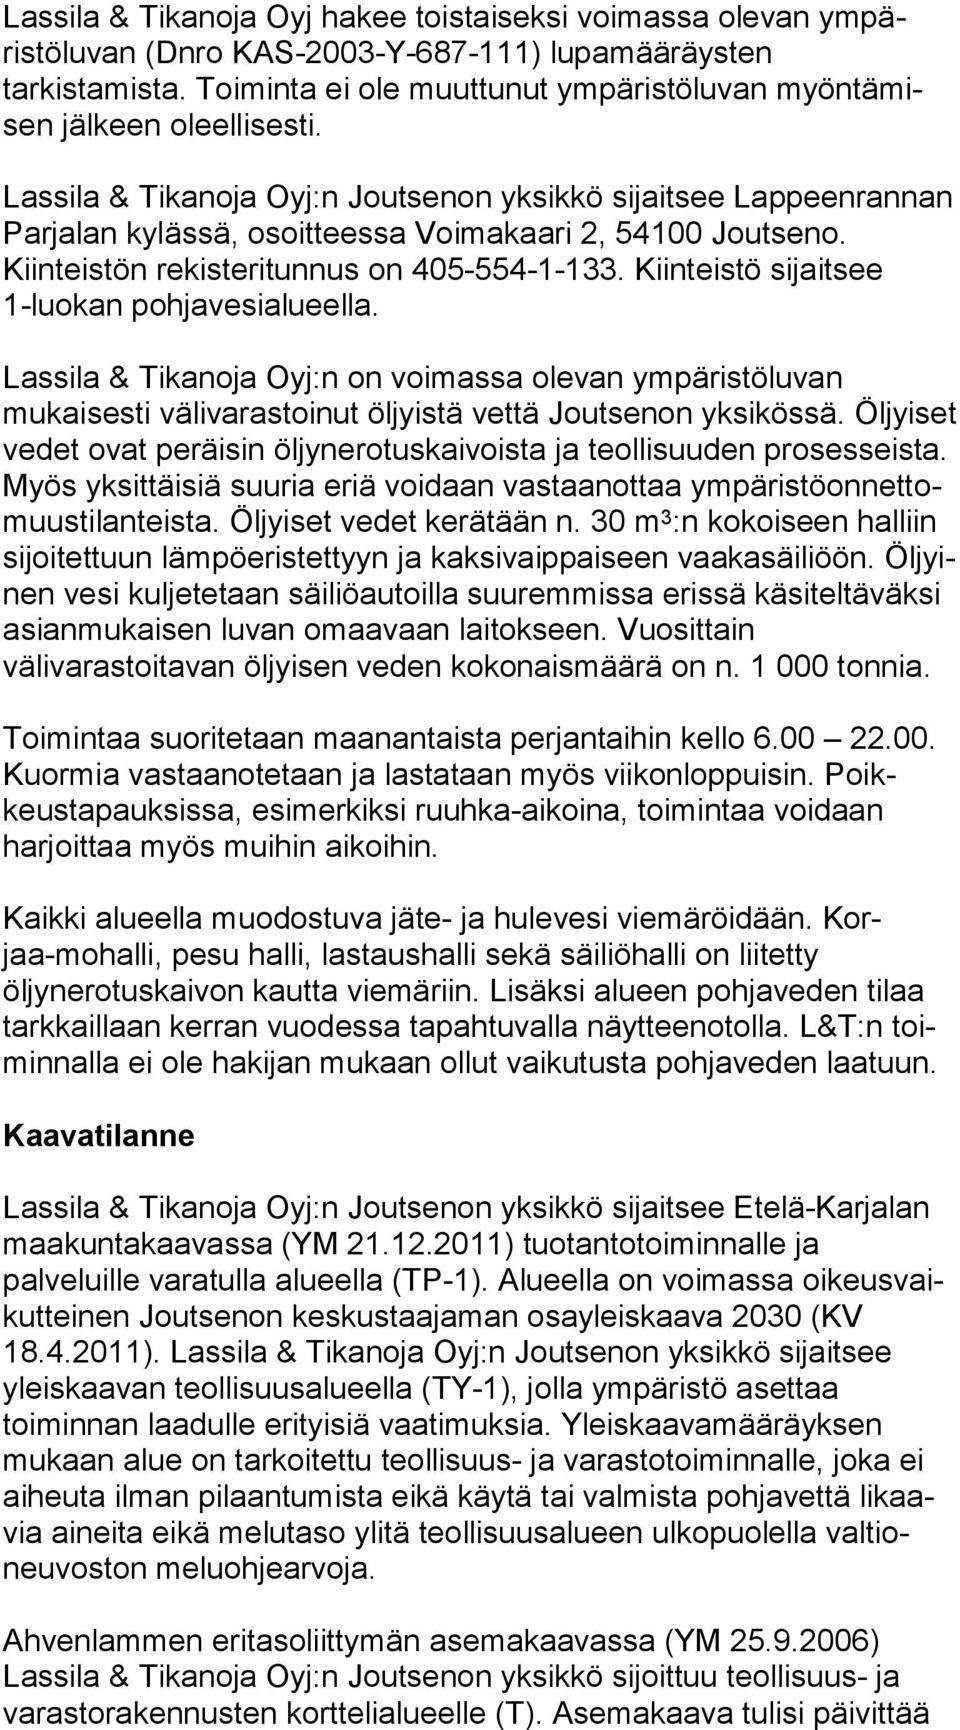 Lassila & Tikanoja Oyj:n Joutsenon yksikkö sijaitsee Lap peen ran nan Parjalan ky läs sä, osoitteessa Voimakaari 2, 54100 Joutseno. Kiinteistön re kis te ri tun nus on 405-554-1-133.